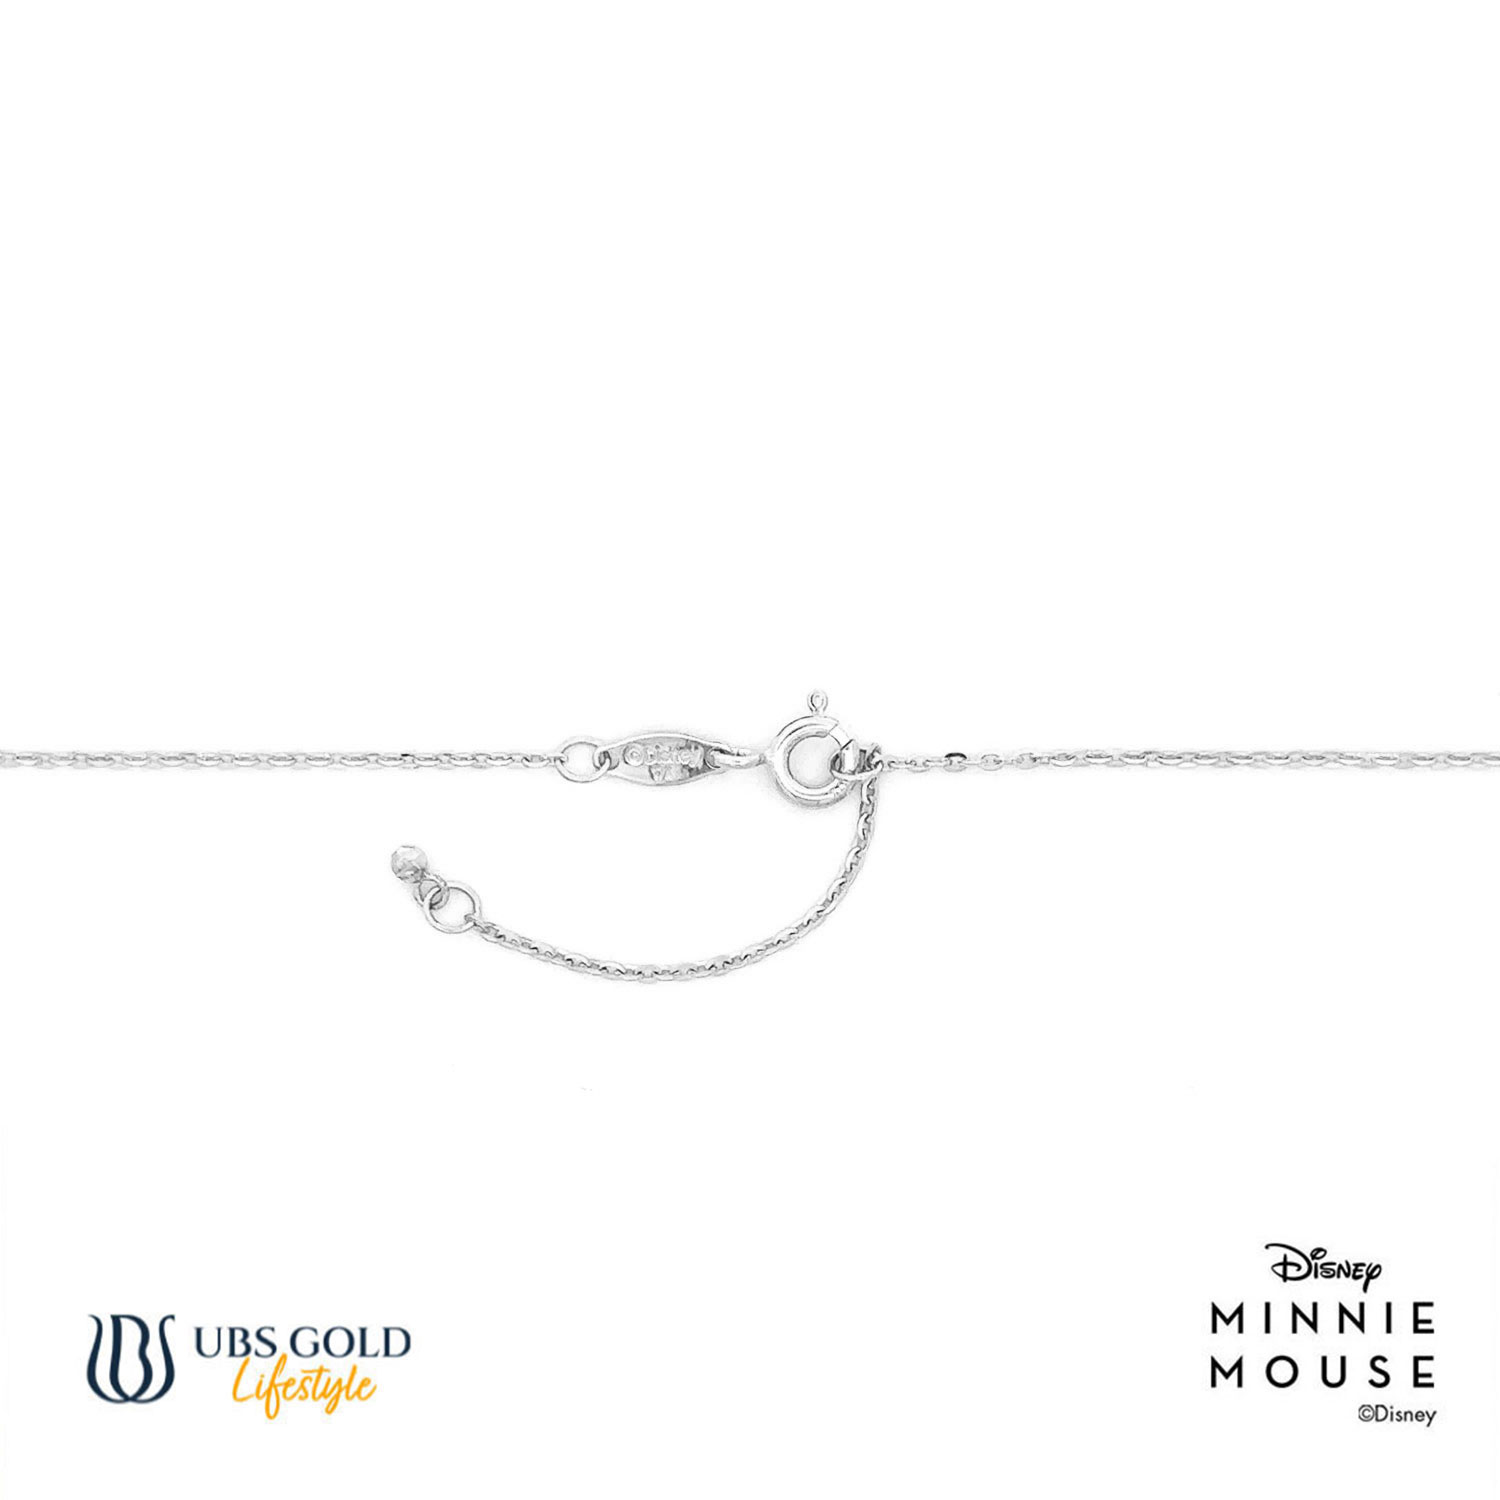 UBS Gold Kalung Emas Disney Minnie Mouse - Kky0469B - 17K